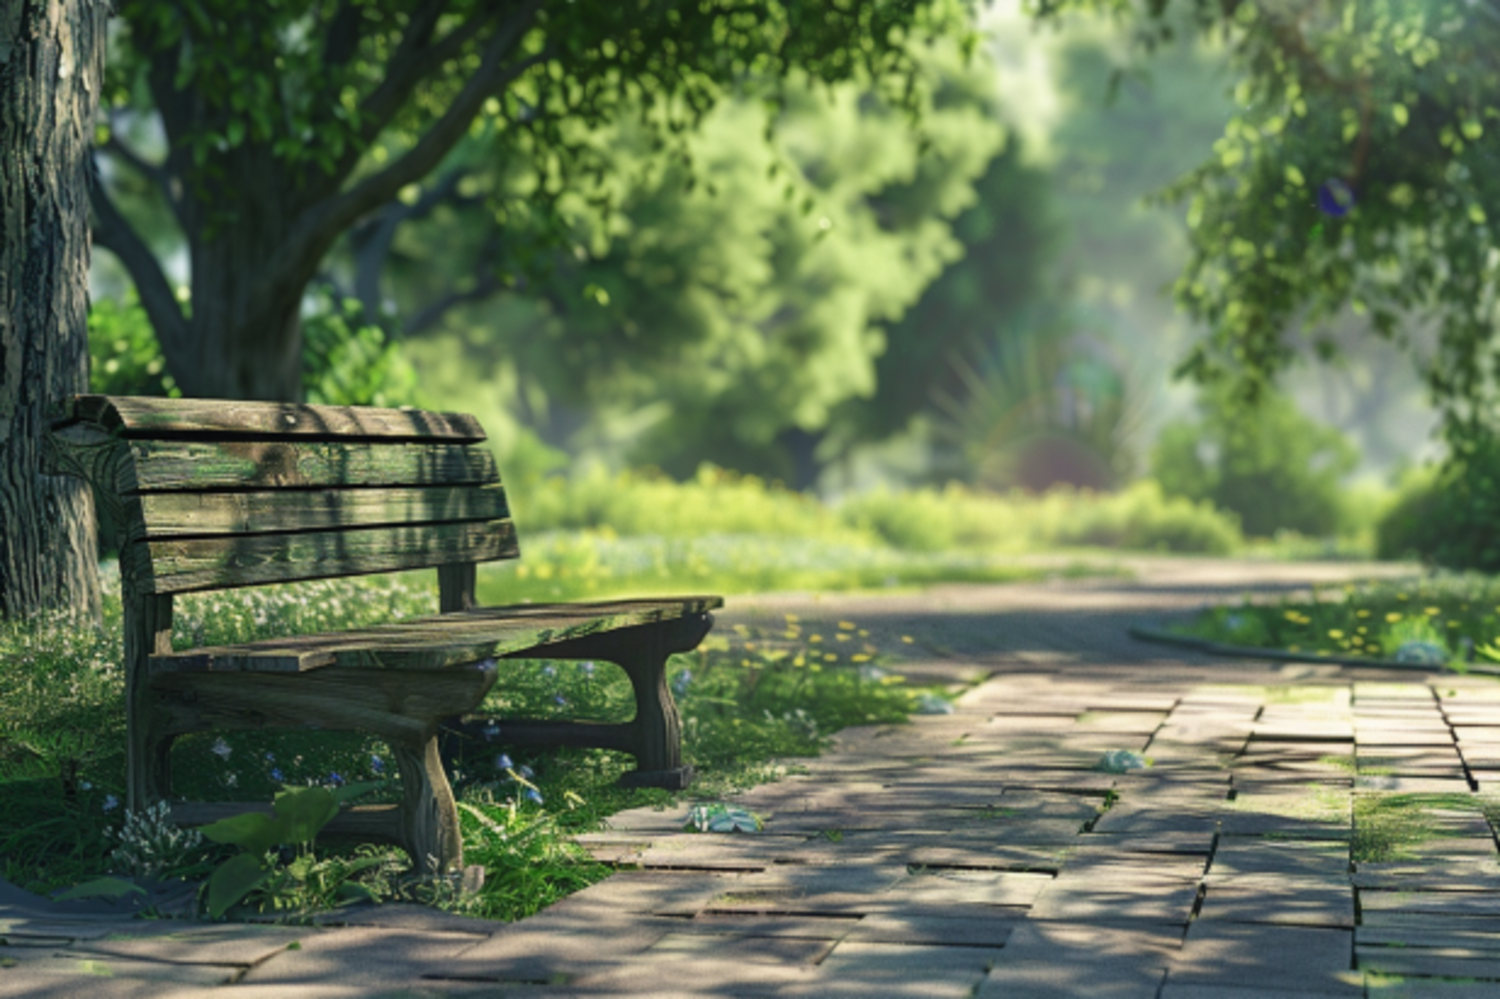 Le banc en bois du parc où Esther et William ont eu leur premier rendez-vous | Source : Midjourney